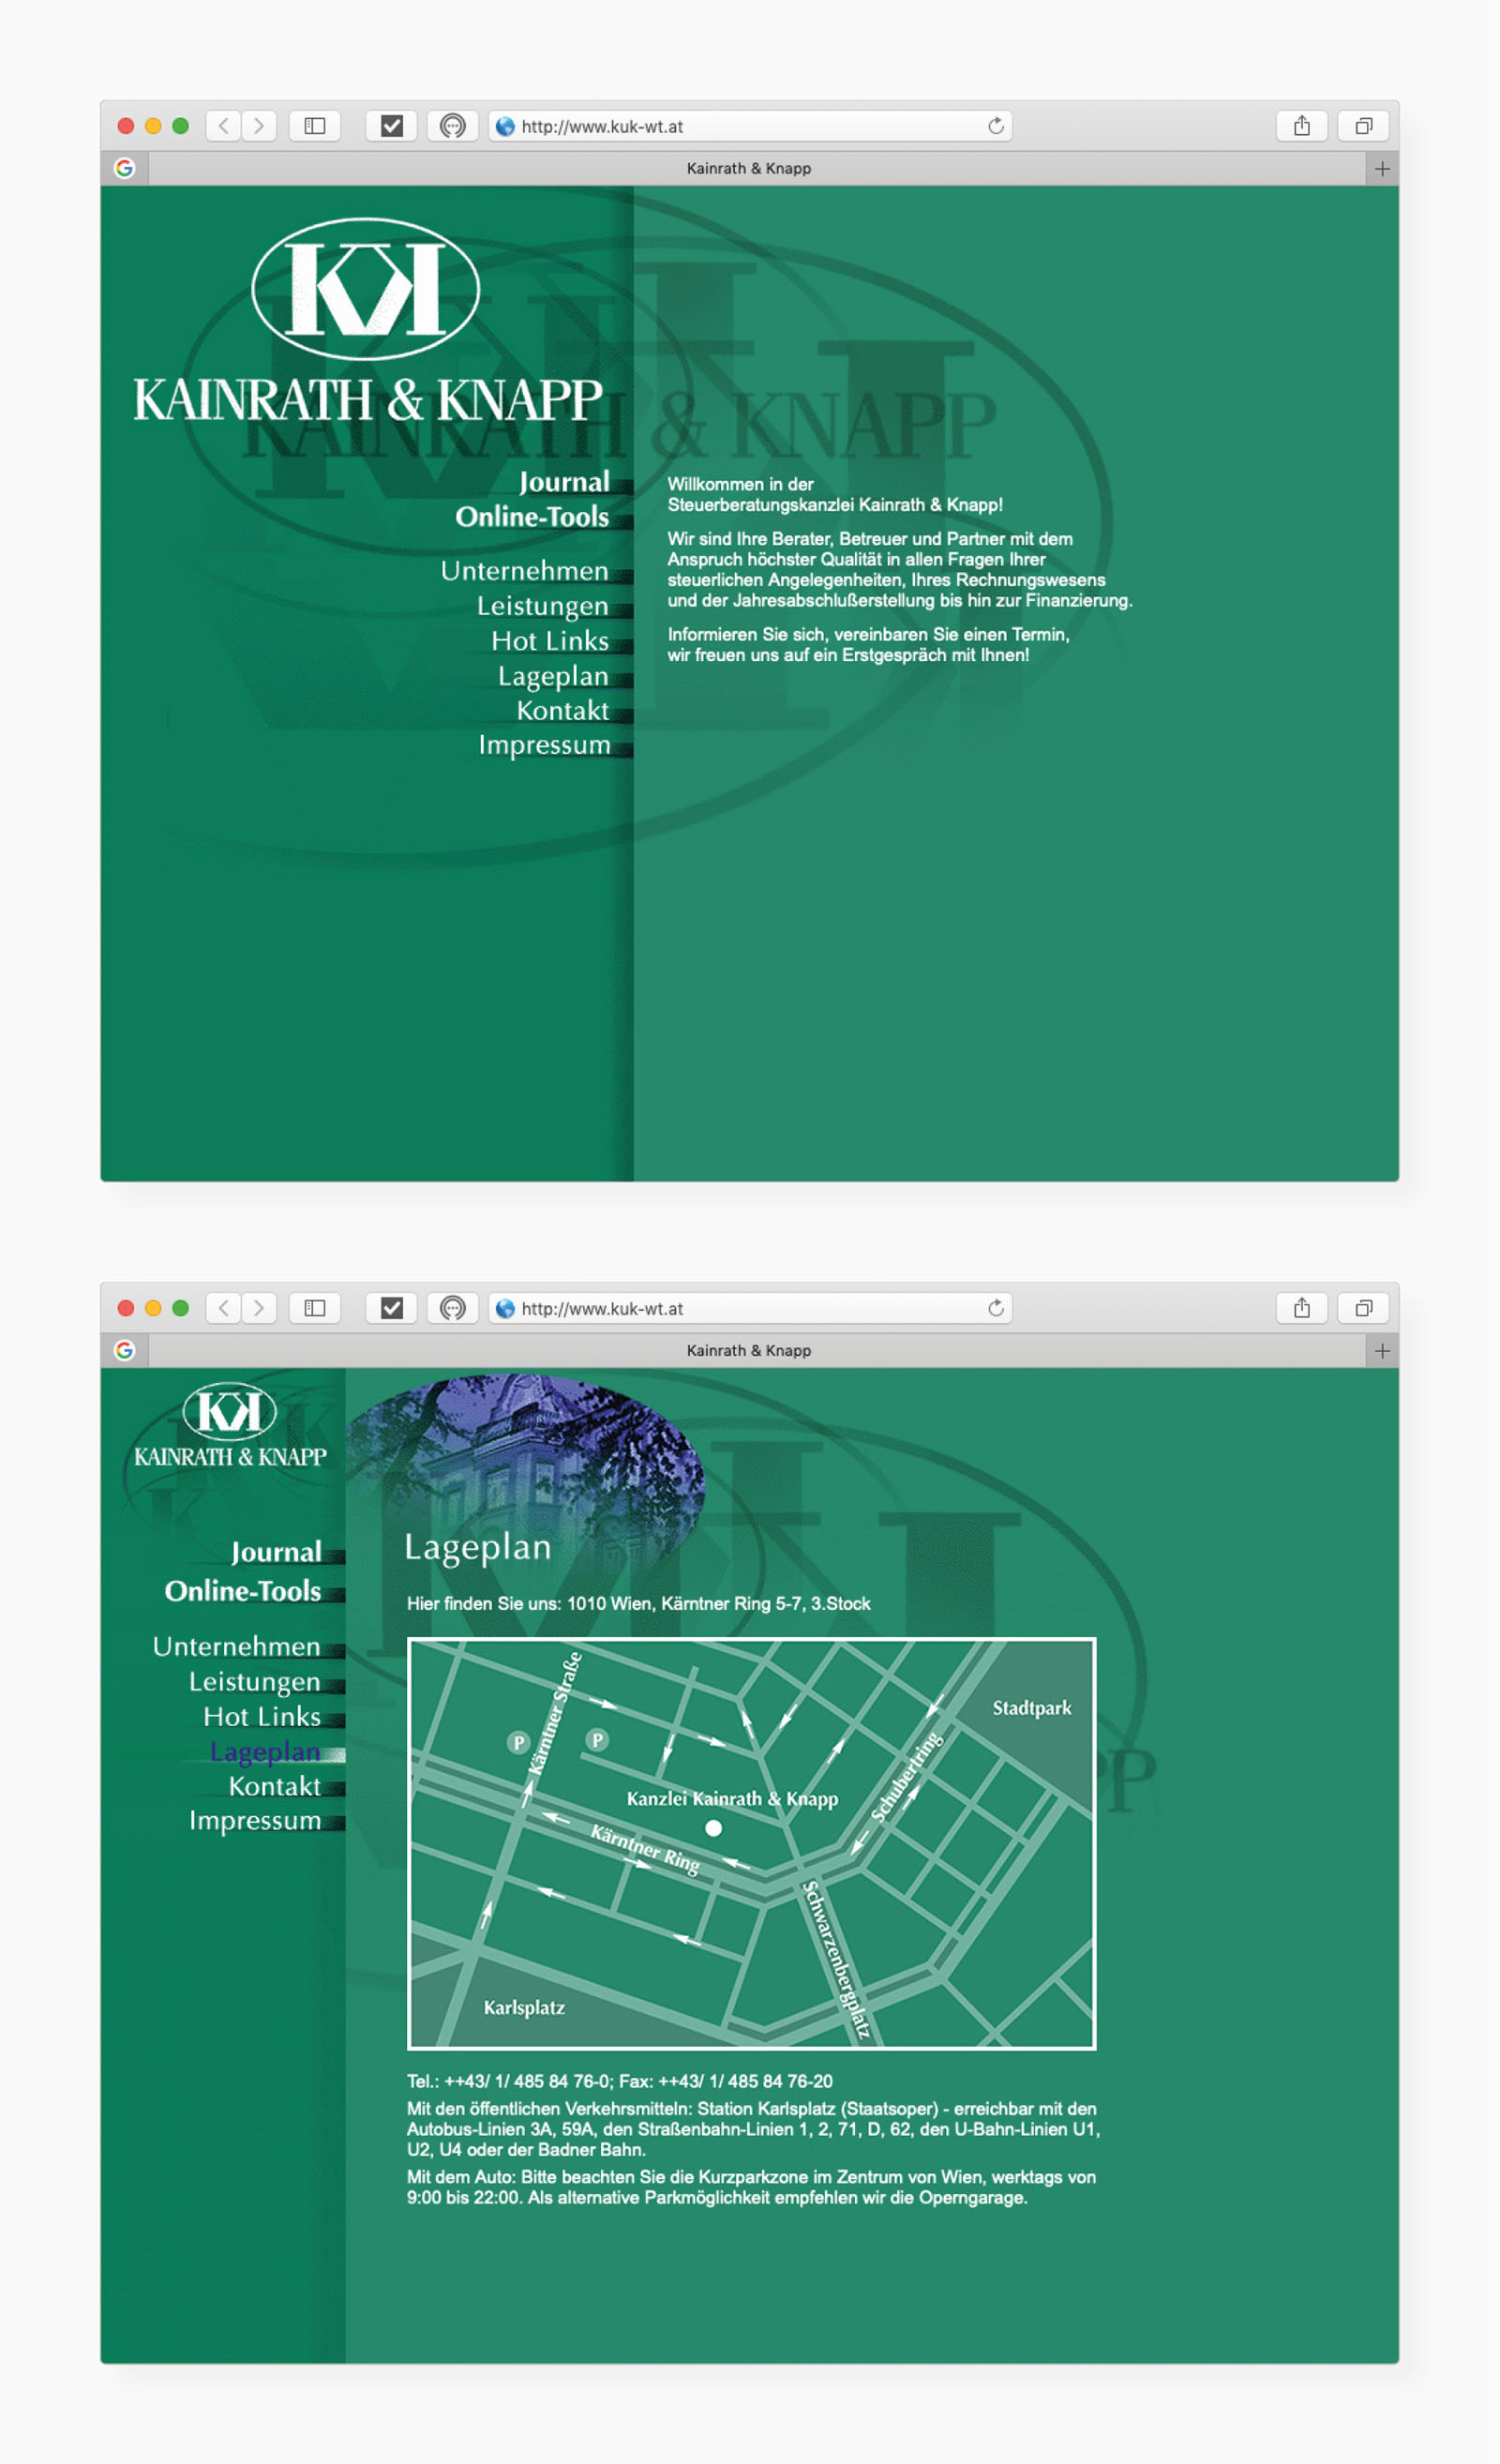 Auswahl von Screens des Netzauftrittes (oben: Homepage, unten: Bereich "Lageplan")